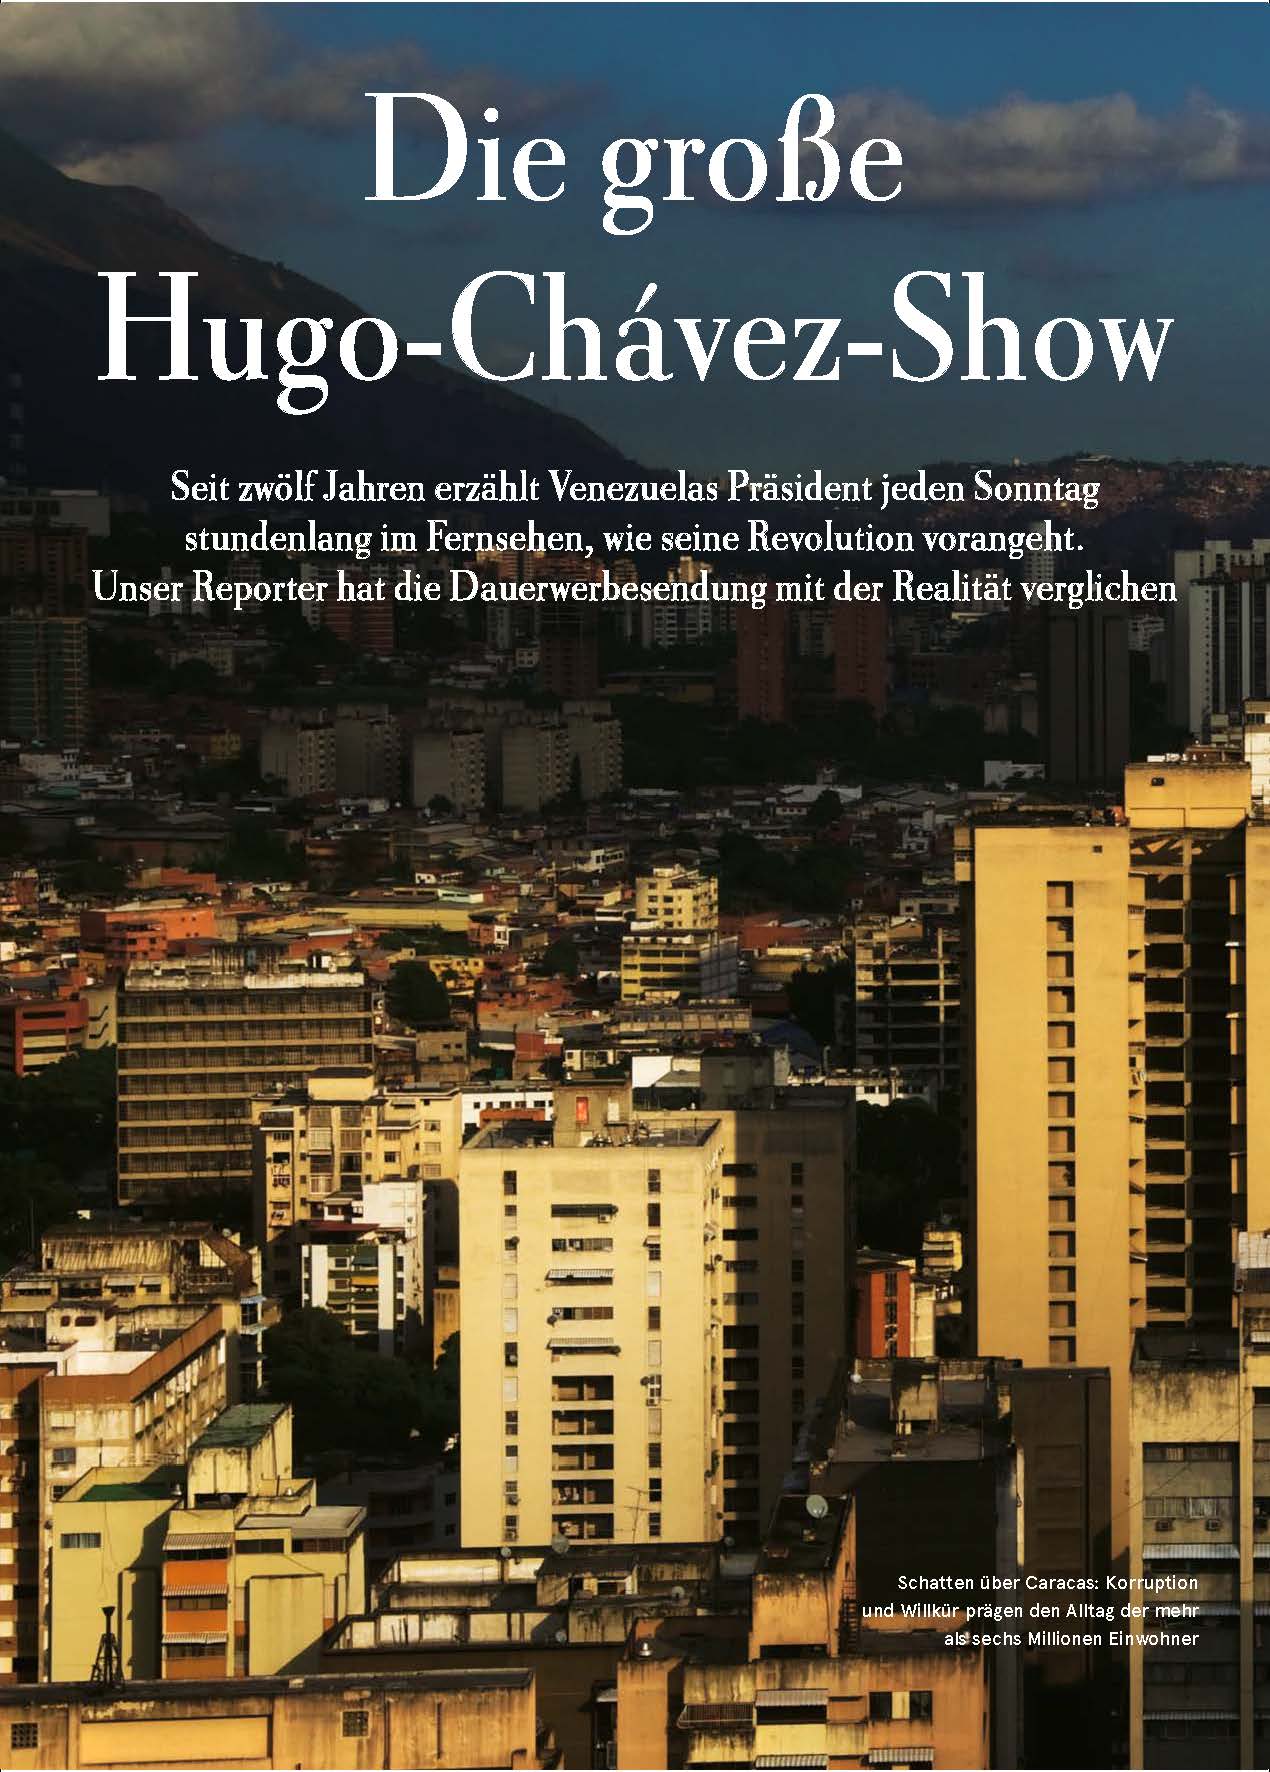 Zeit Magazin Die grosse Hugo-Chávez-Show Thomas Wagner Venezuela Hugo Chávez